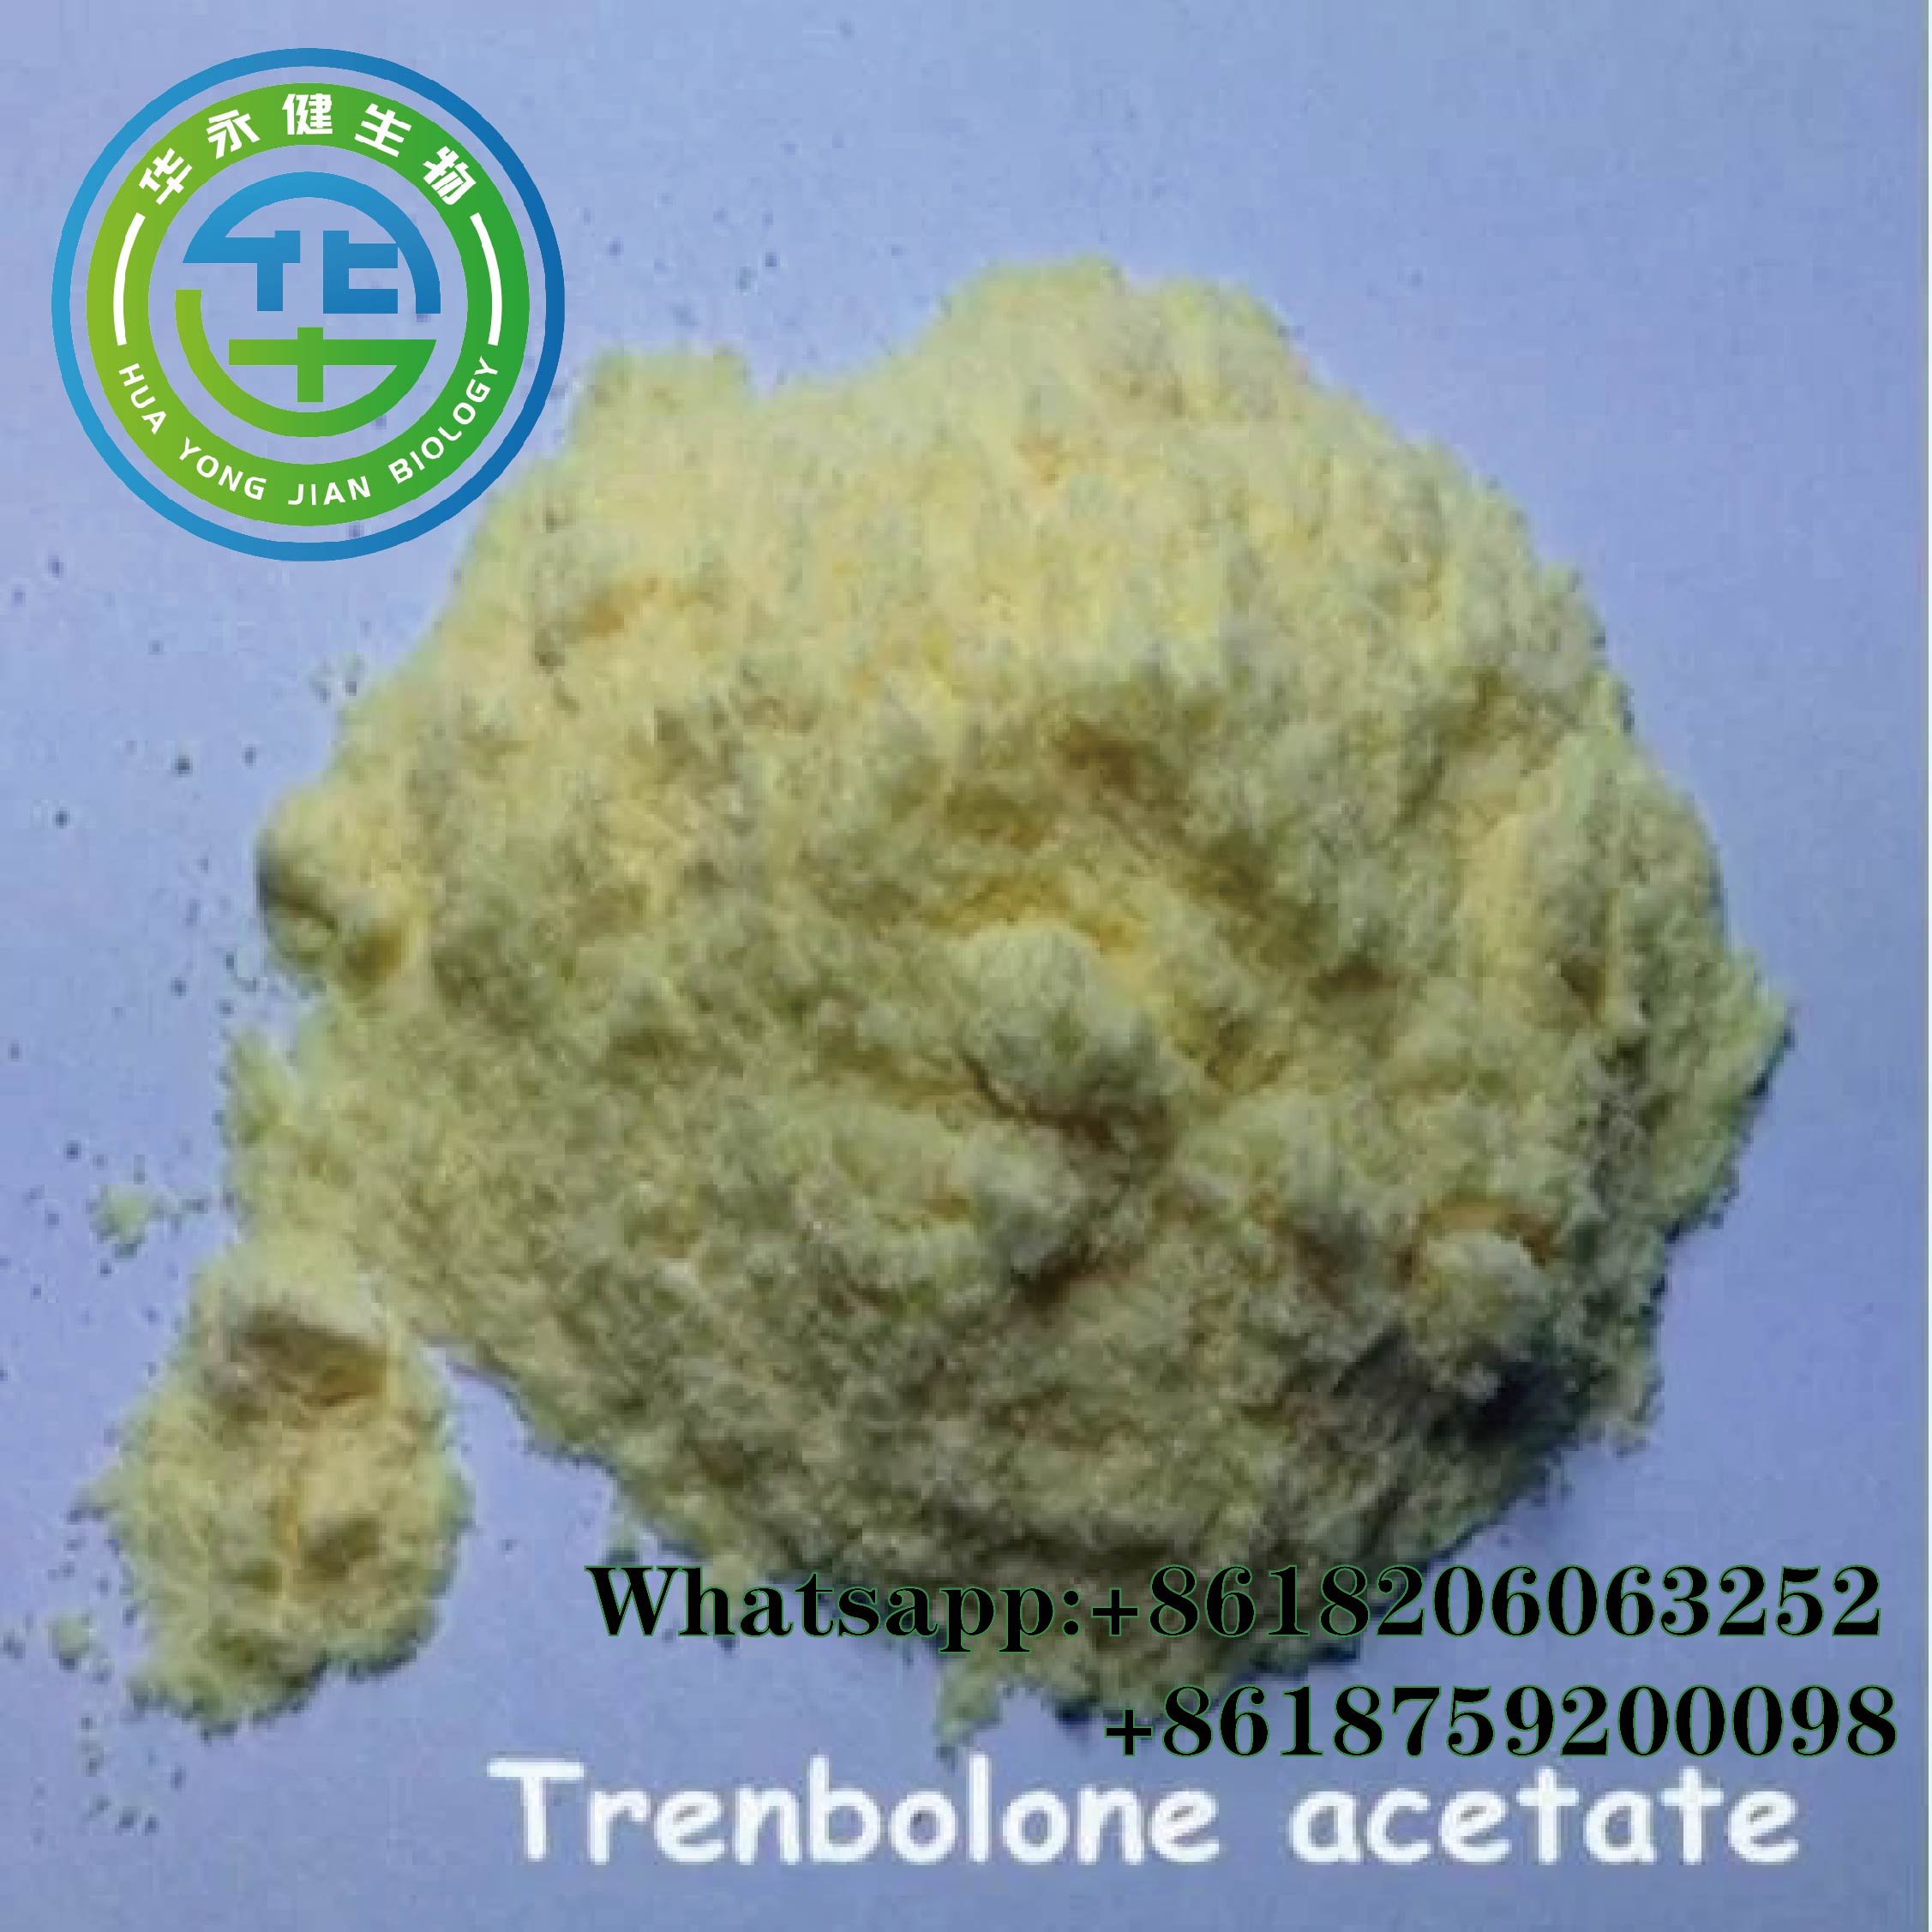 99.9% उच्च शुद्धता Trembolones Acetates पिवळा स्टिरॉइड्स बॉडी बिल्डिंगसाठी कच्चा पावडर ब्राझील सुरक्षित शिपिंग ट्रेन एसीटेट स्नायू शक्ती वैशिष्ट्यीकृत प्रतिमा